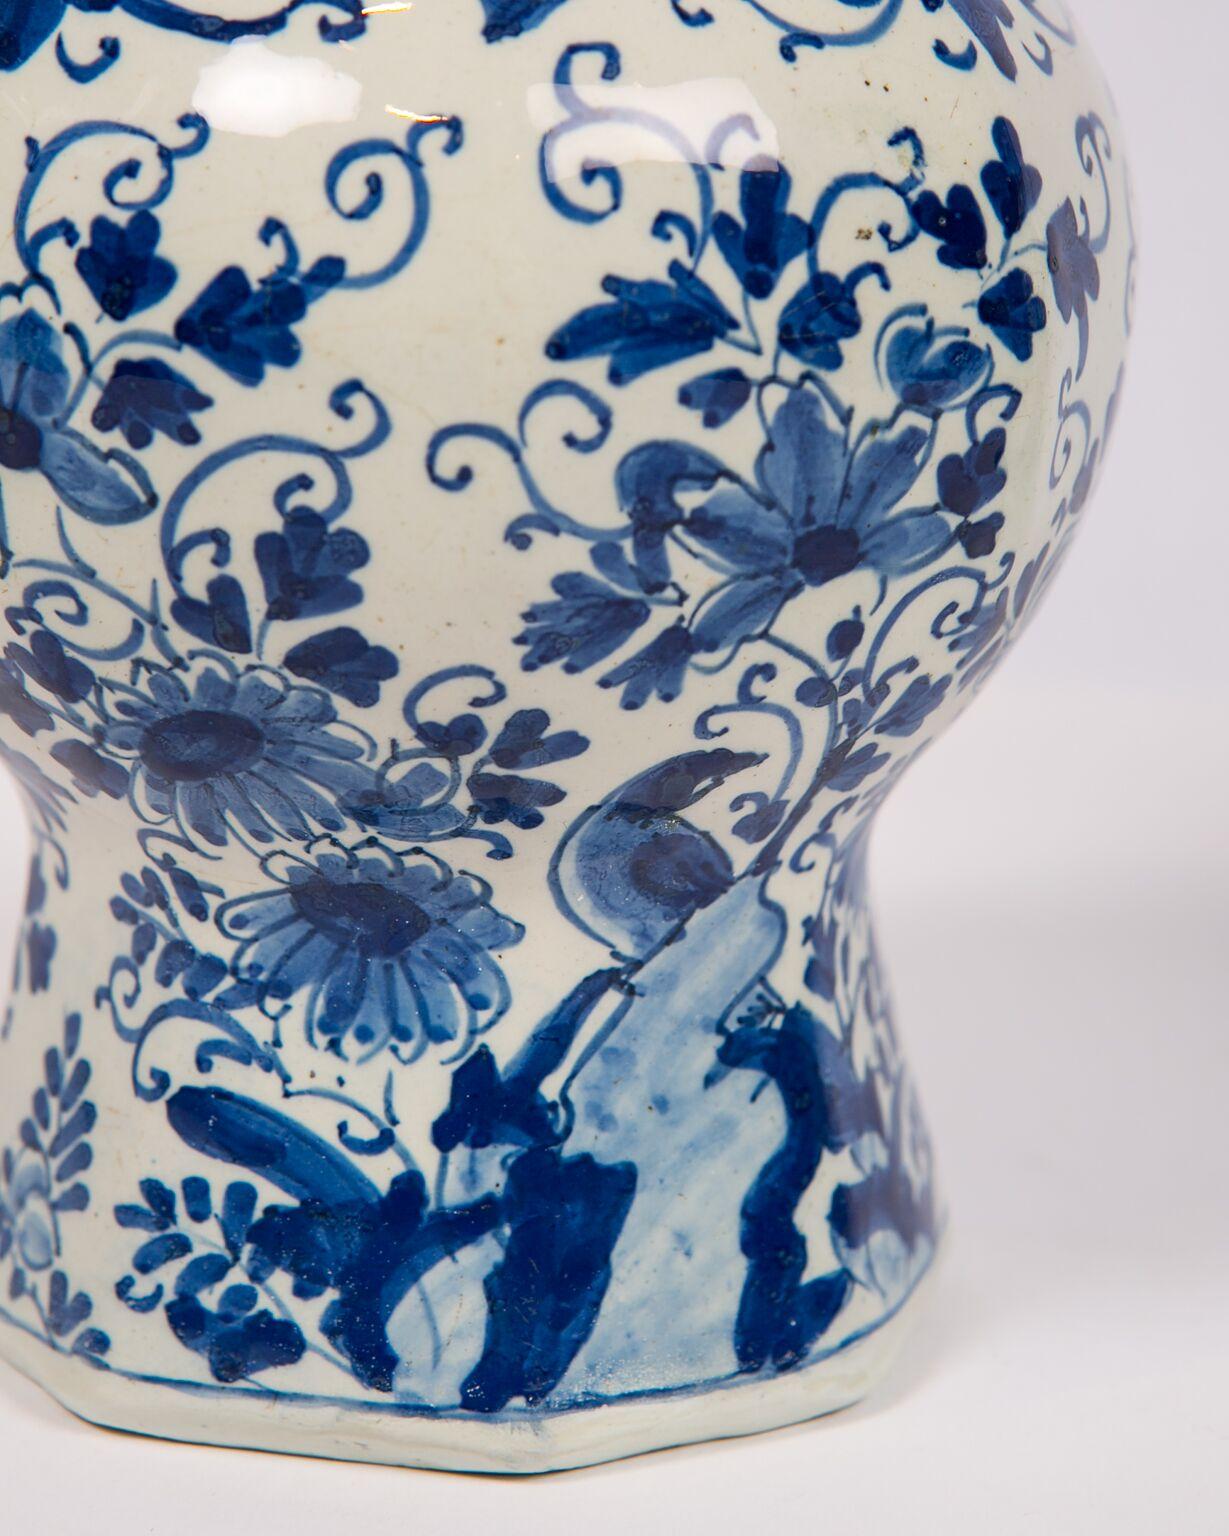 Rococo Delft Blue and White Vases, 18th Century